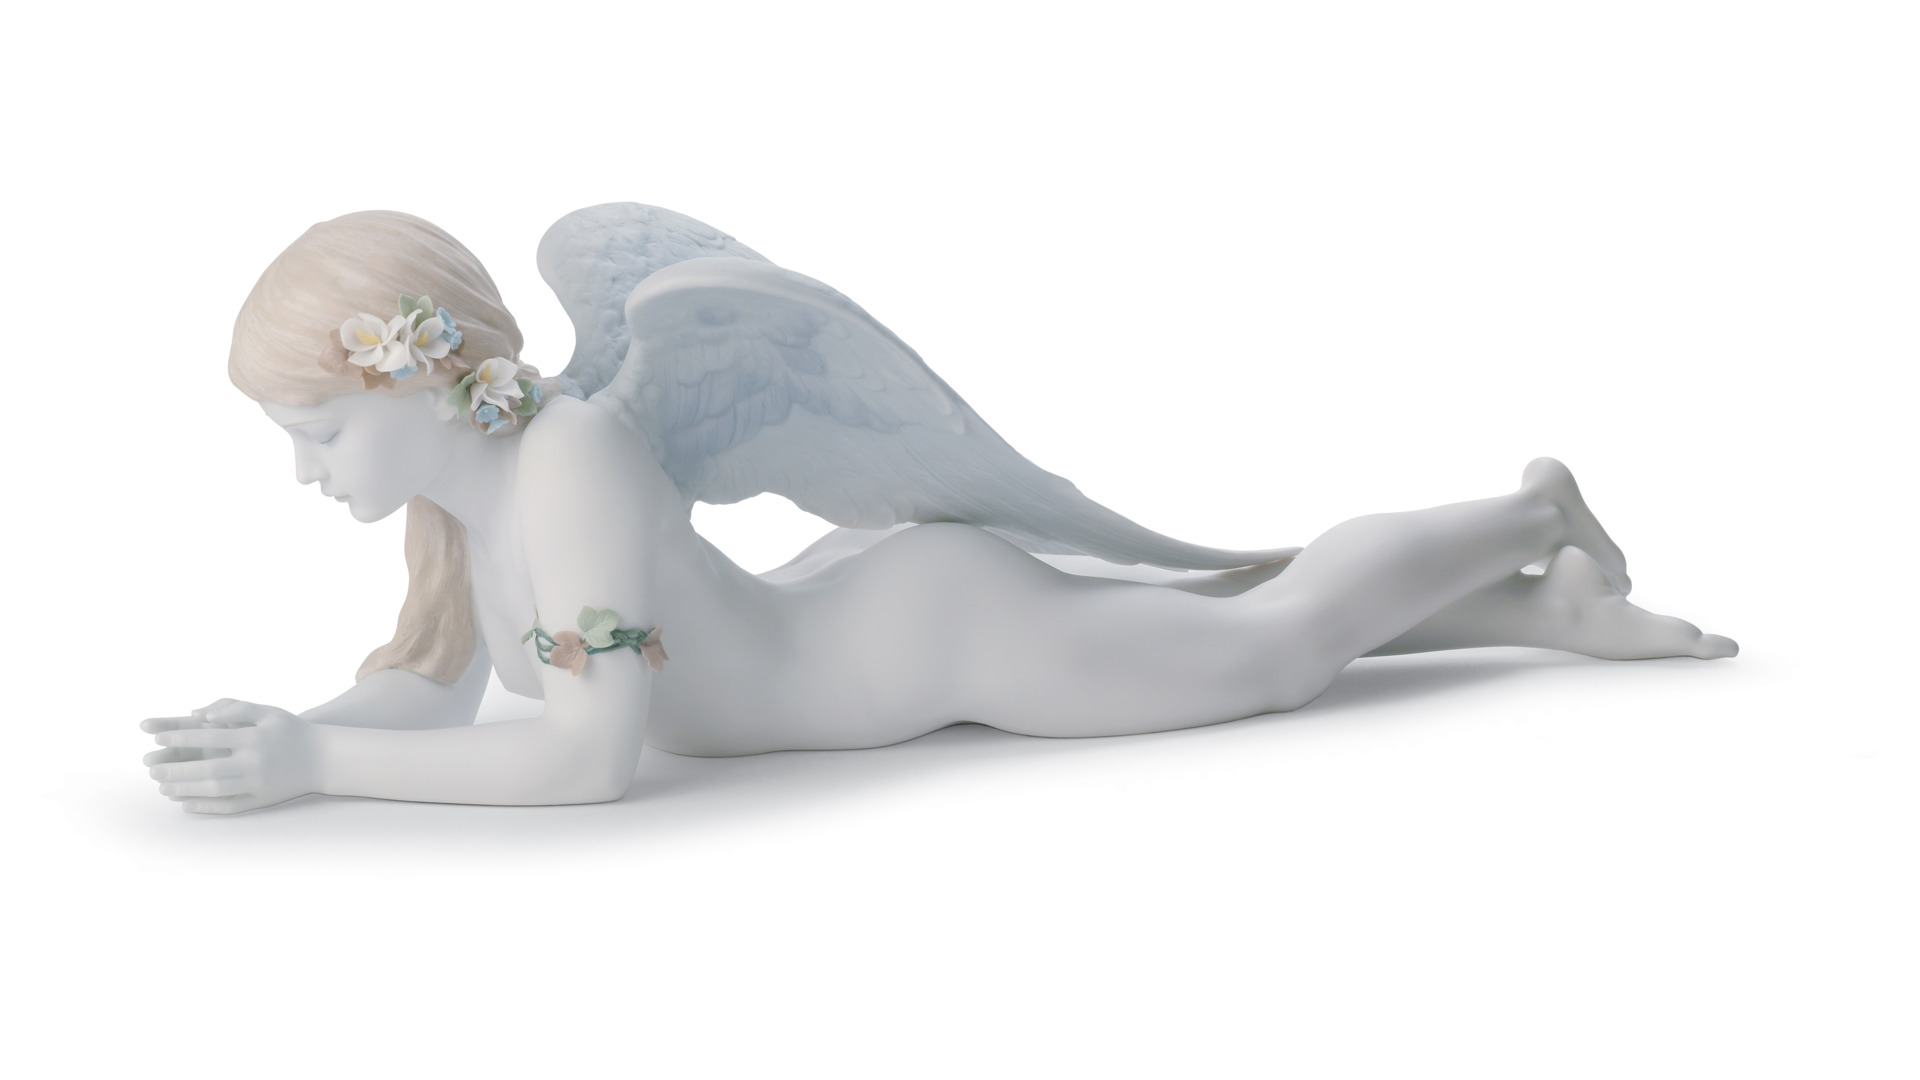 Фигурка Lladro Чудесный ангел 42х13 см, фарфор